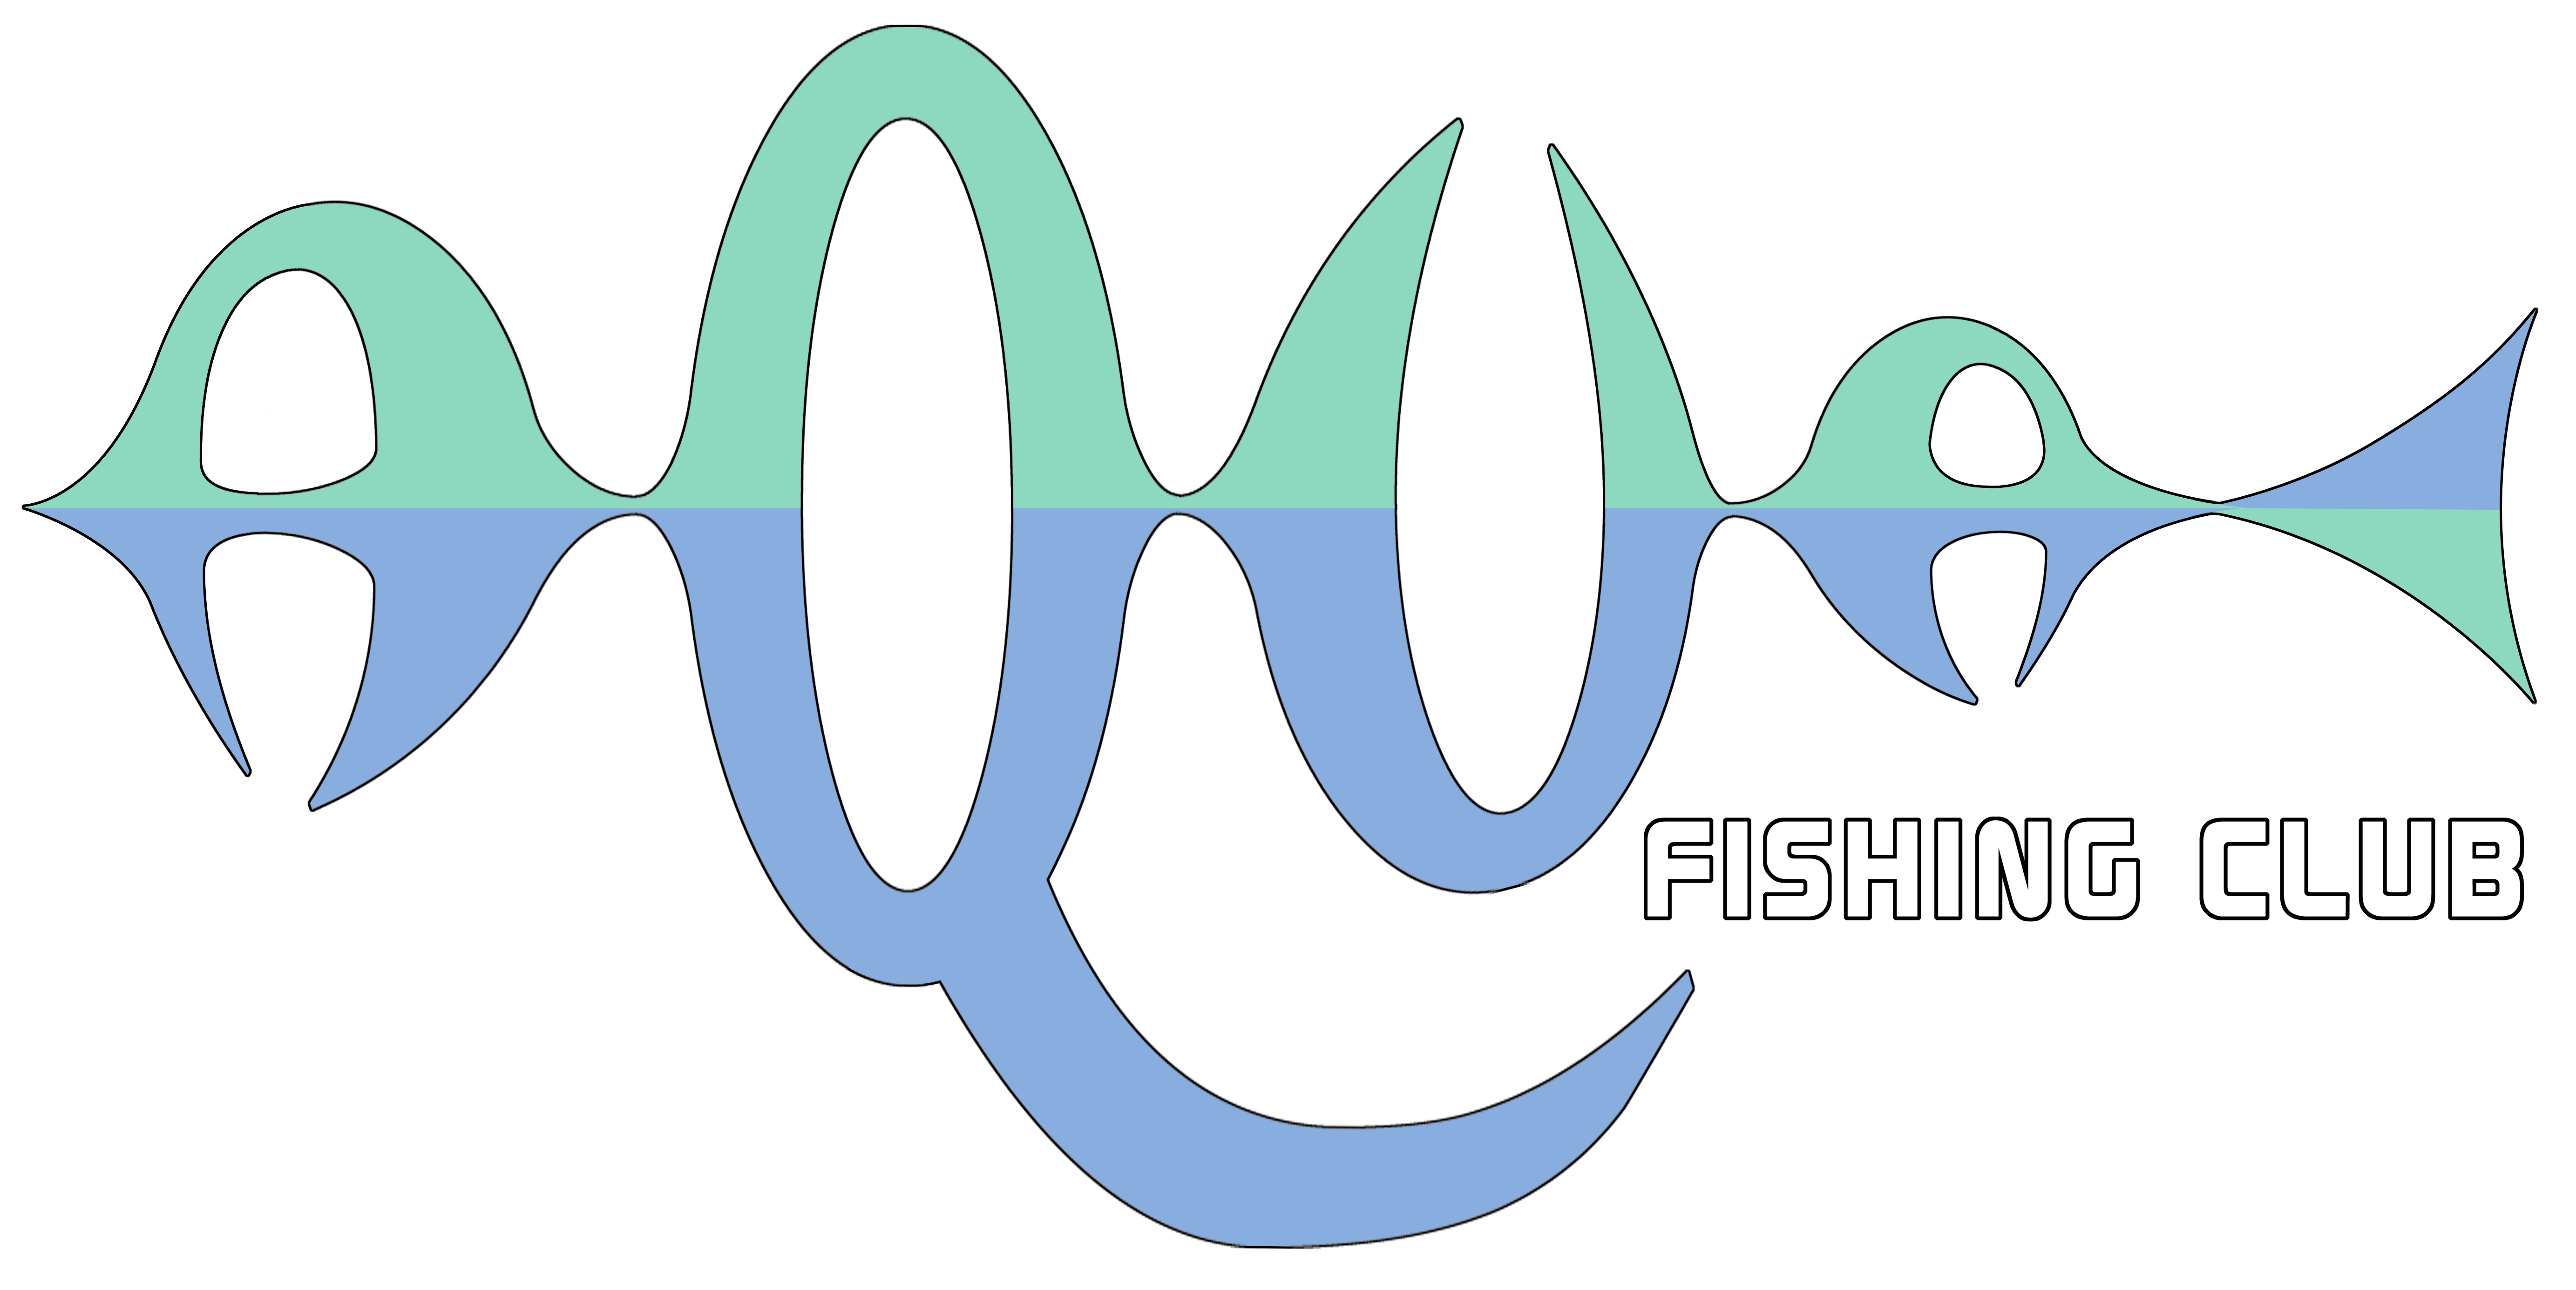 CLUBUL SPORTIV DE PESCUIT AQUA FISHING CLUB logo